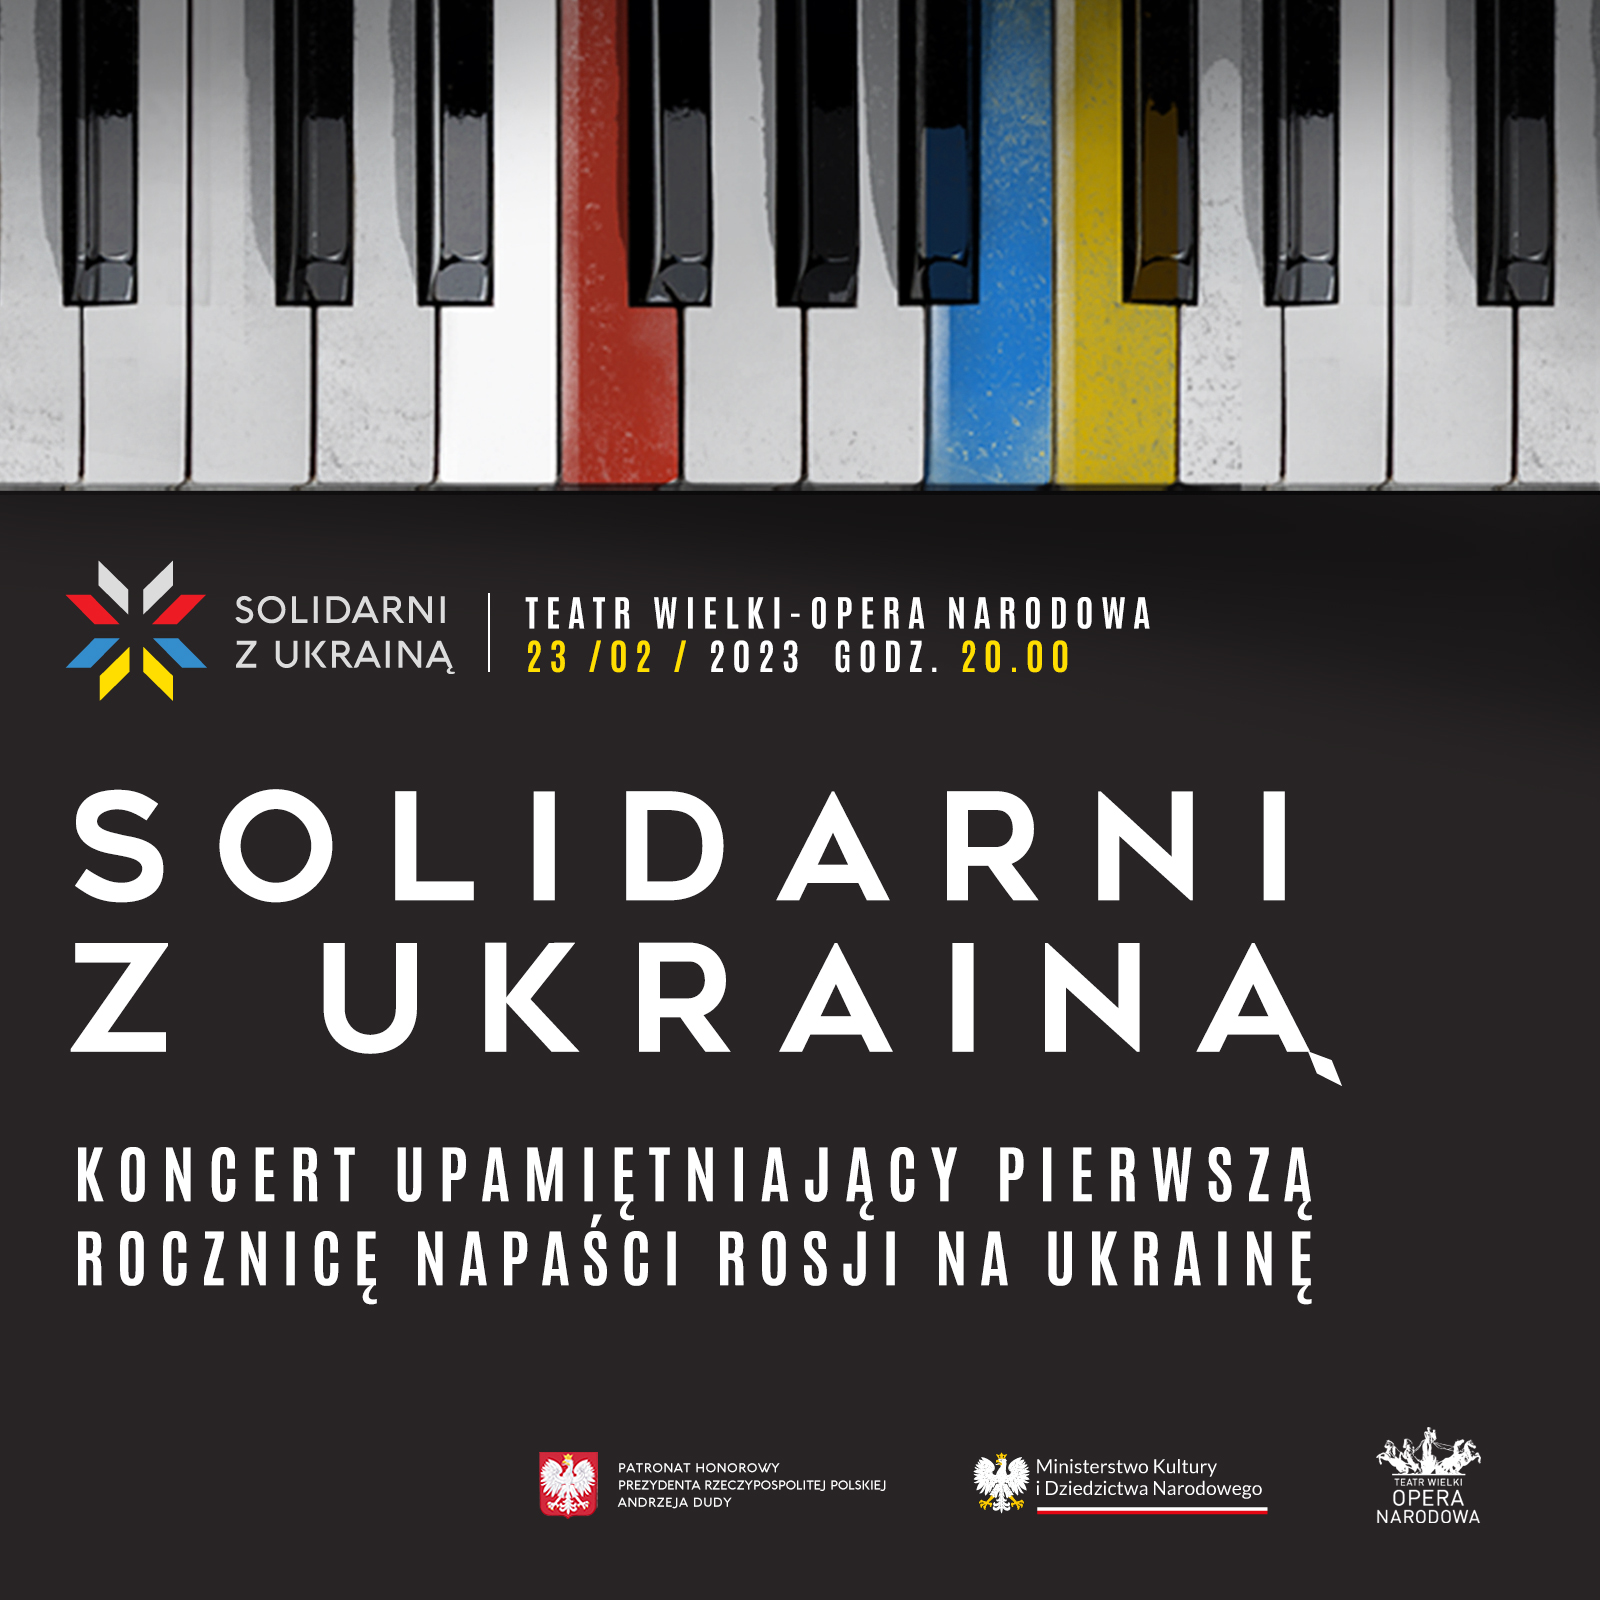 In Solidarity with Ukraine